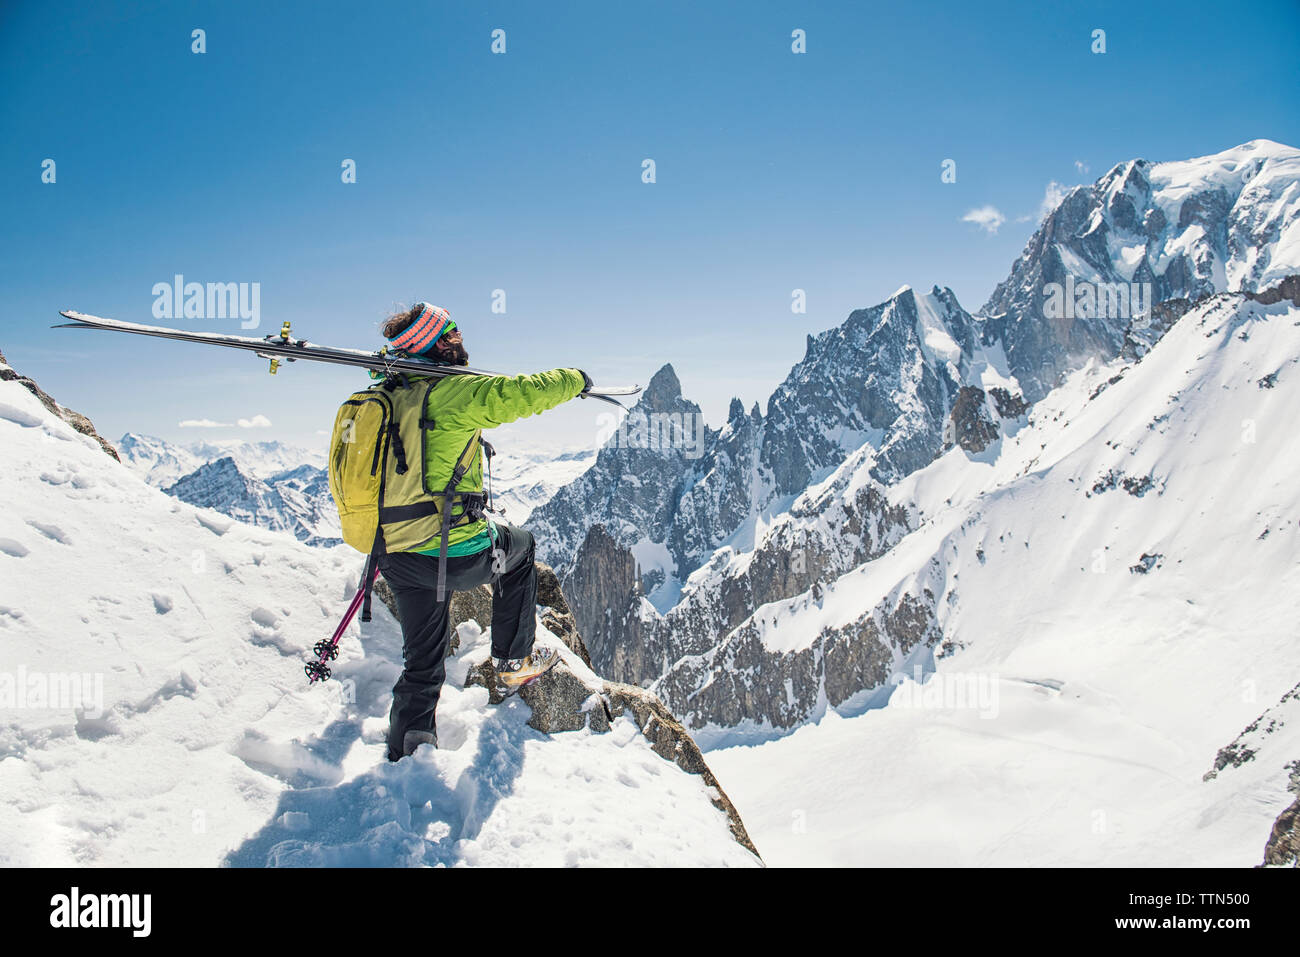 Vue latérale du randonneur avec skis debout sur la montagne couverte de neige contre ciel bleu clair Banque D'Images